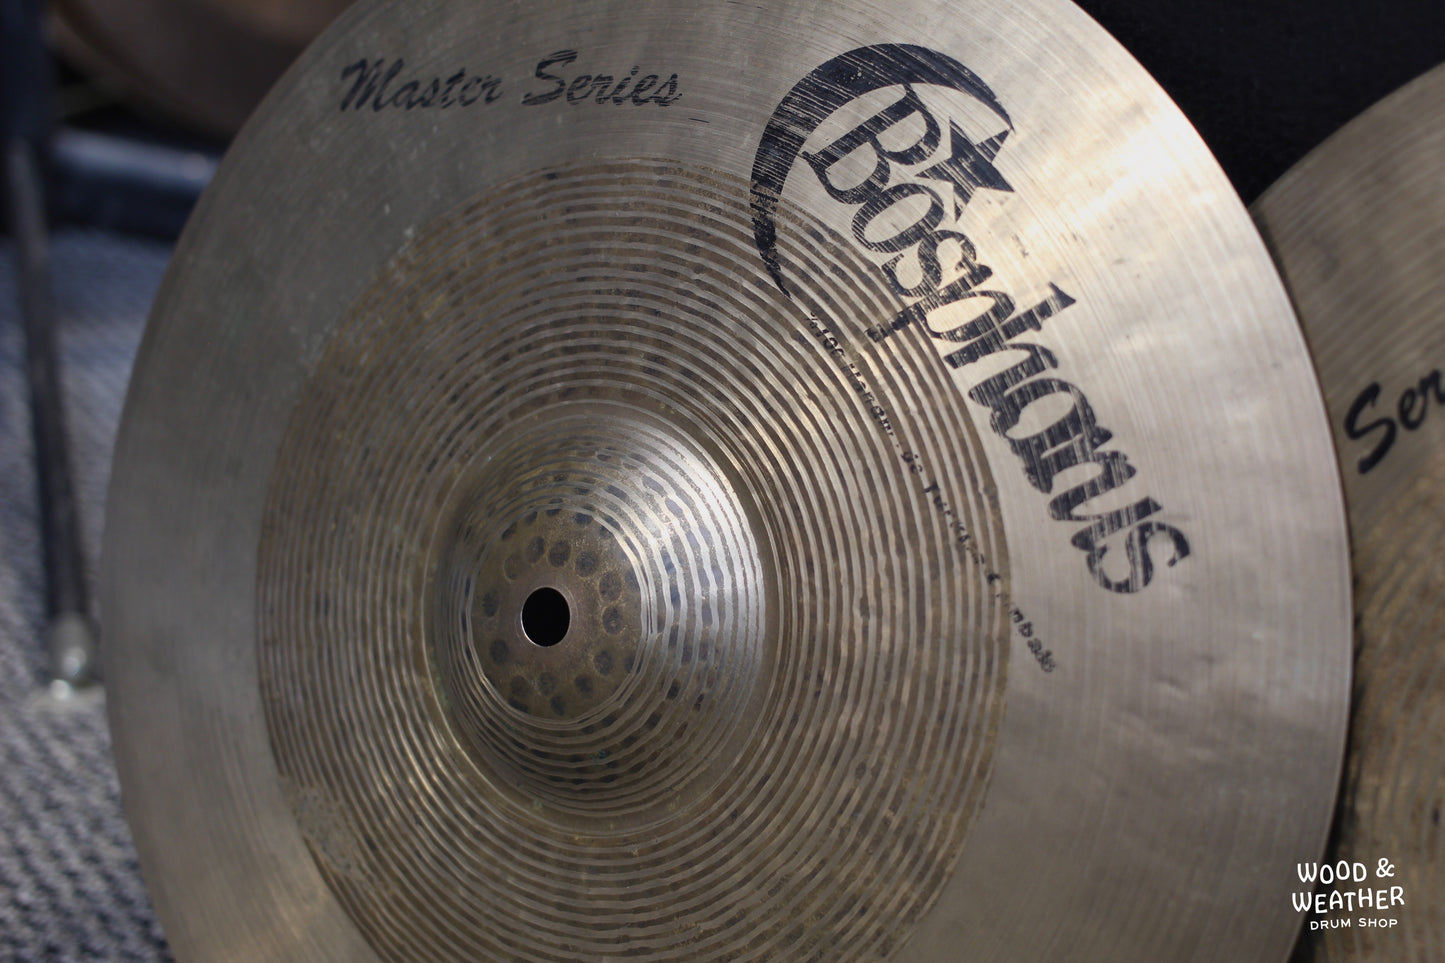 Used Bosphorus 14" Masters Series Hi-Hat Cymbals 886/1080g